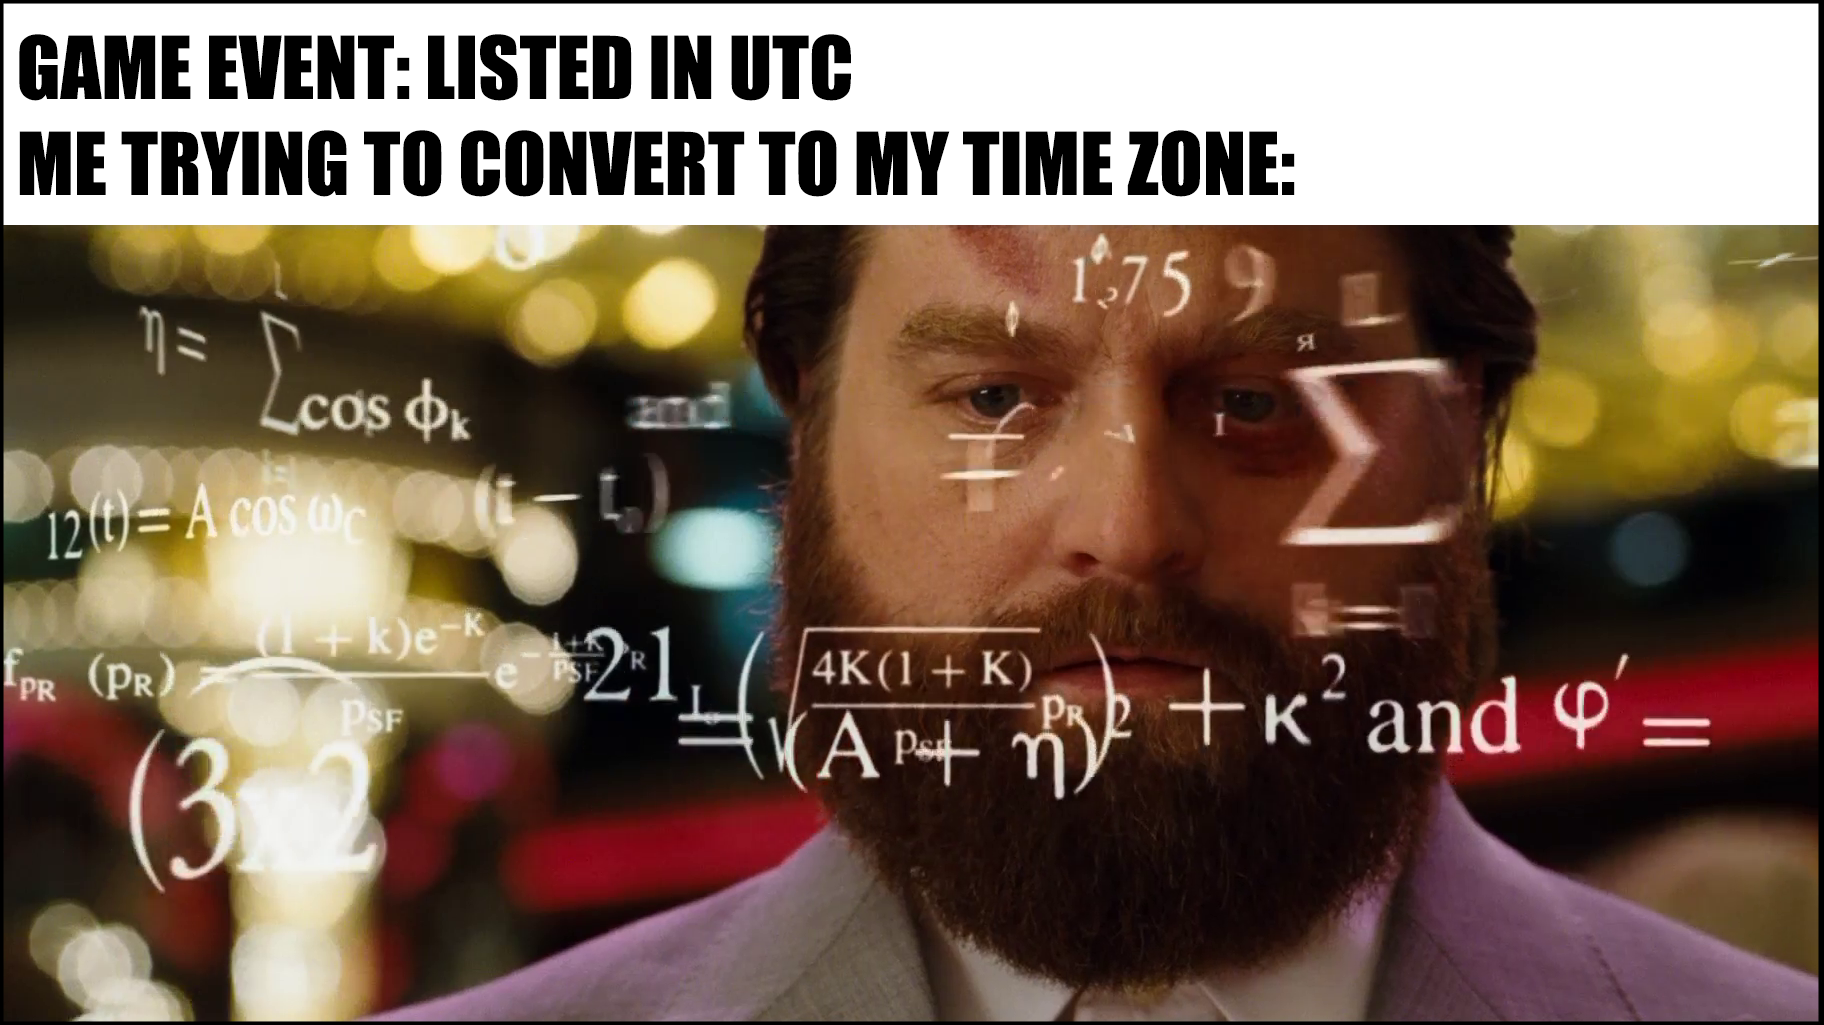 BlueStacks UTC 컨버터 소개 : 인게임 이벤트 시간을 UTC에서 현지 시간으로 변환하기